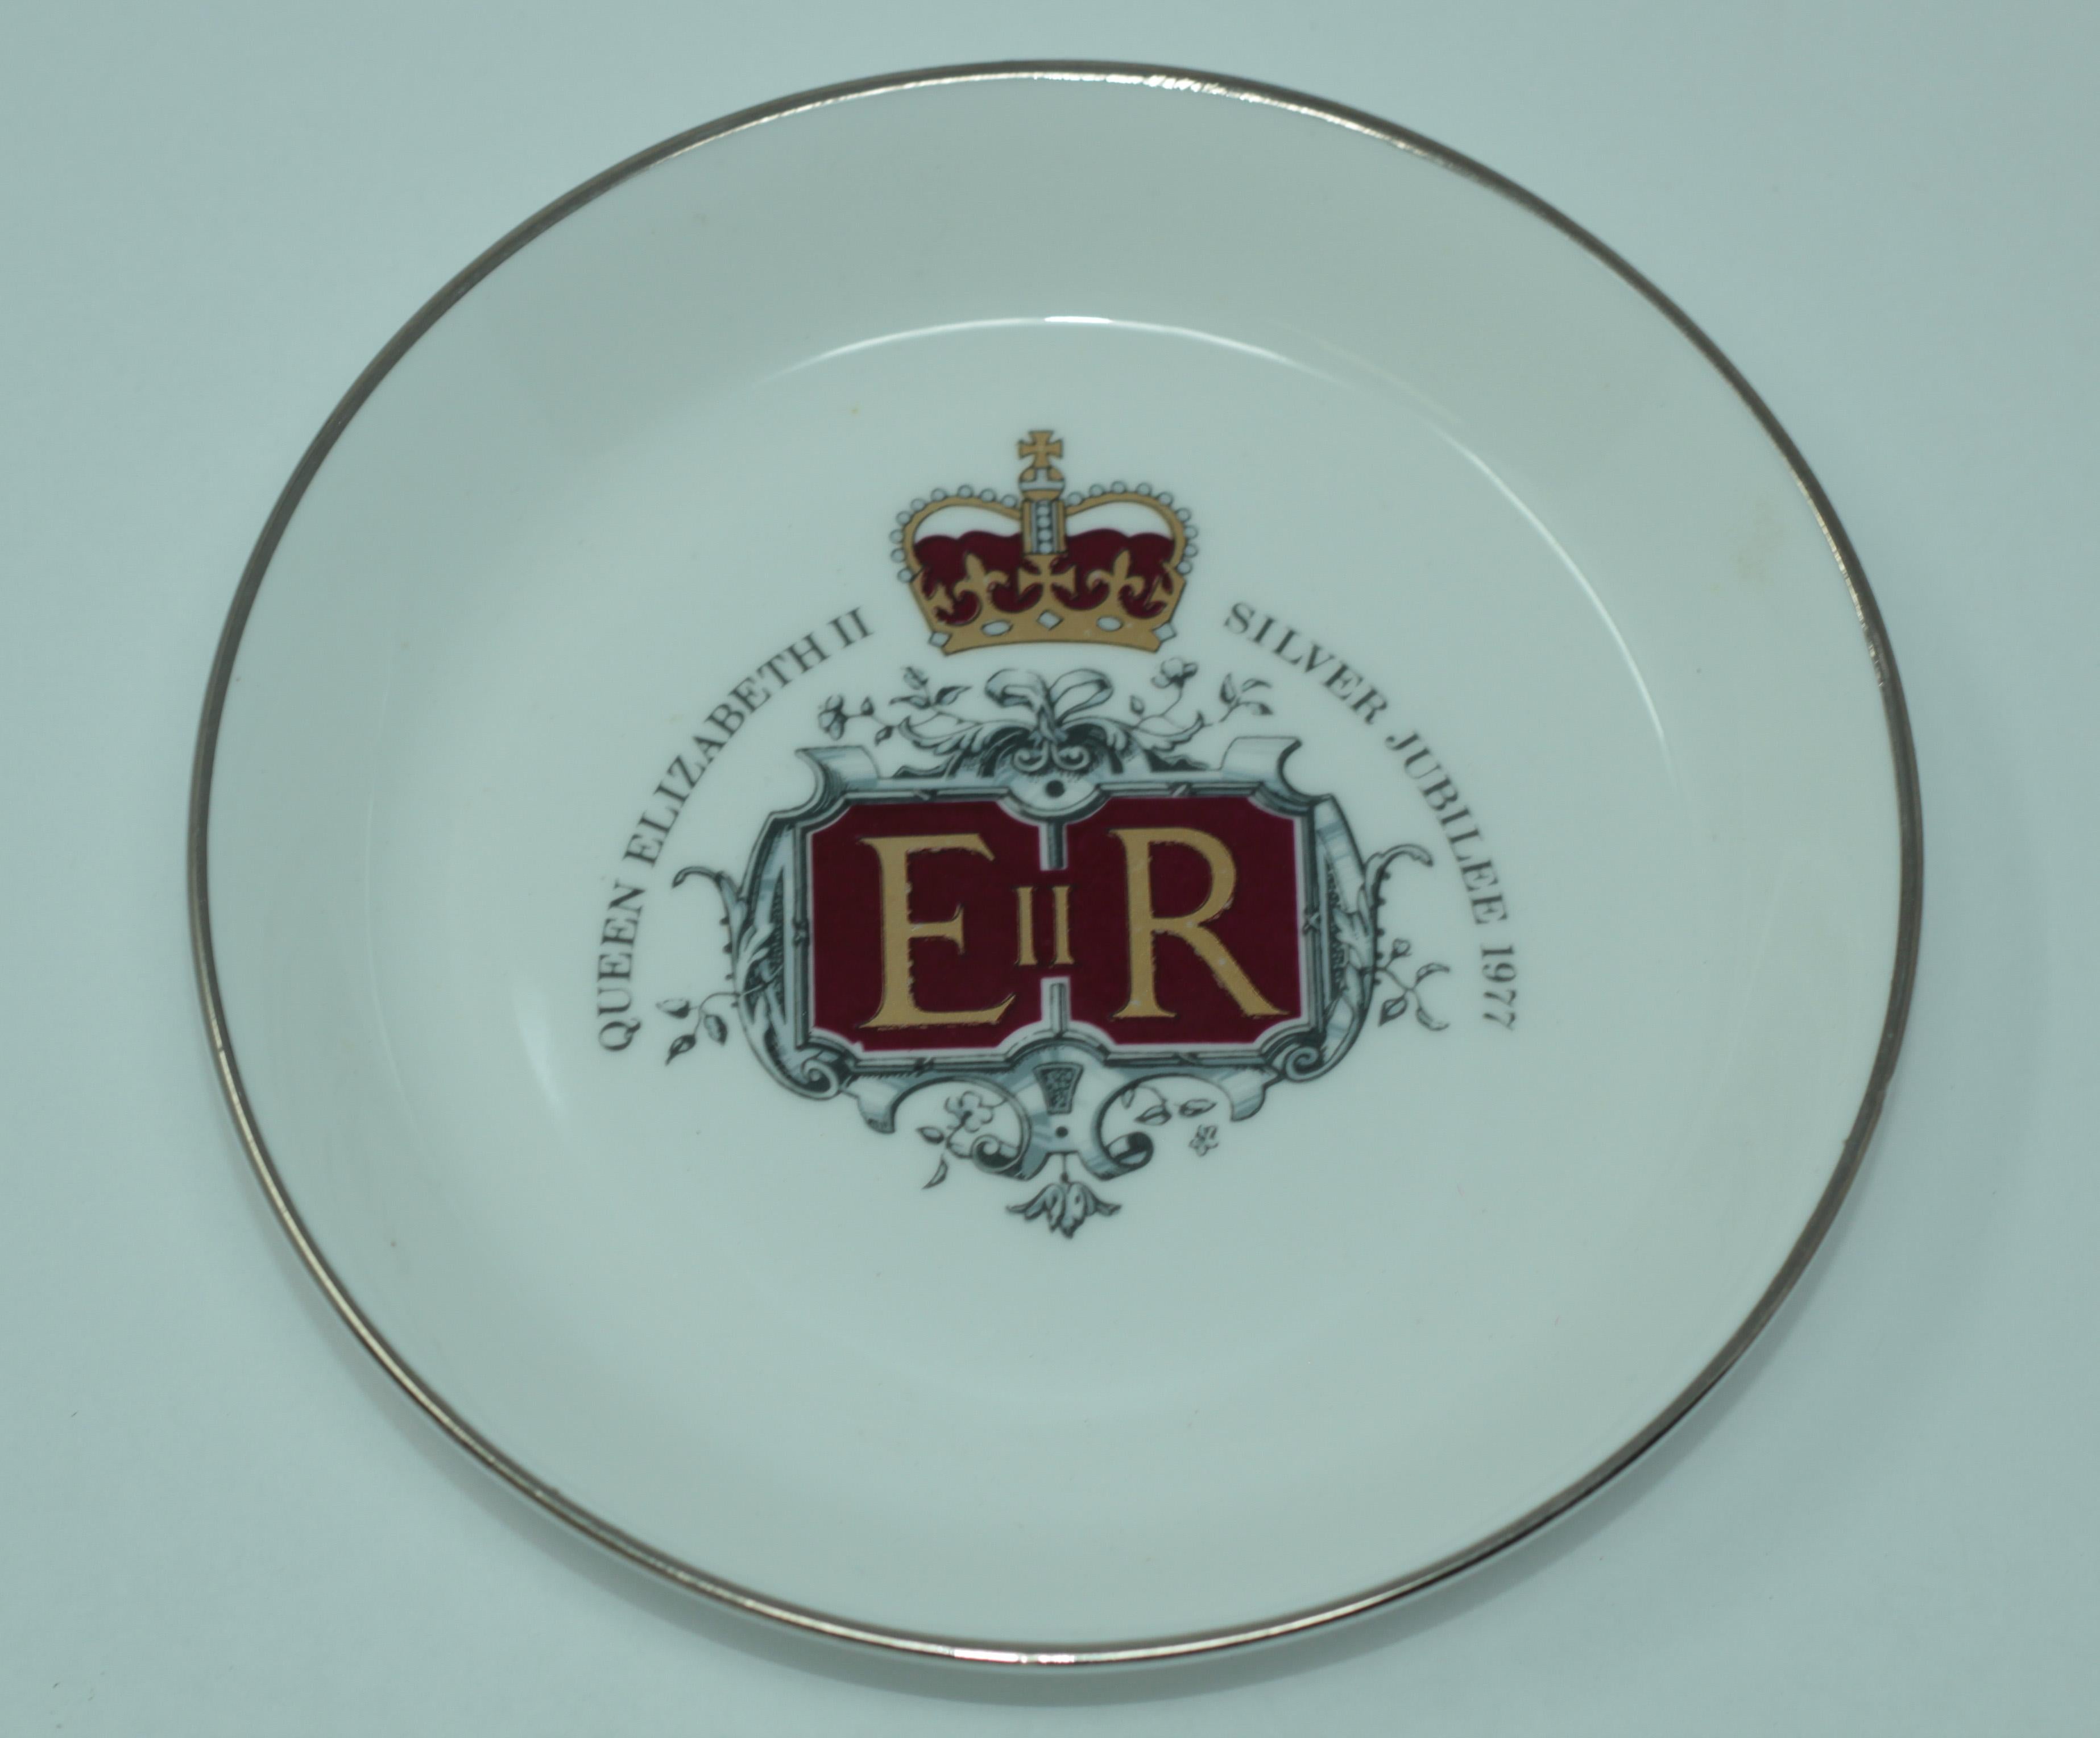 Victorian Vintage Queen Elizabeth II Silver Jubilee Porcelain Plate, 1977